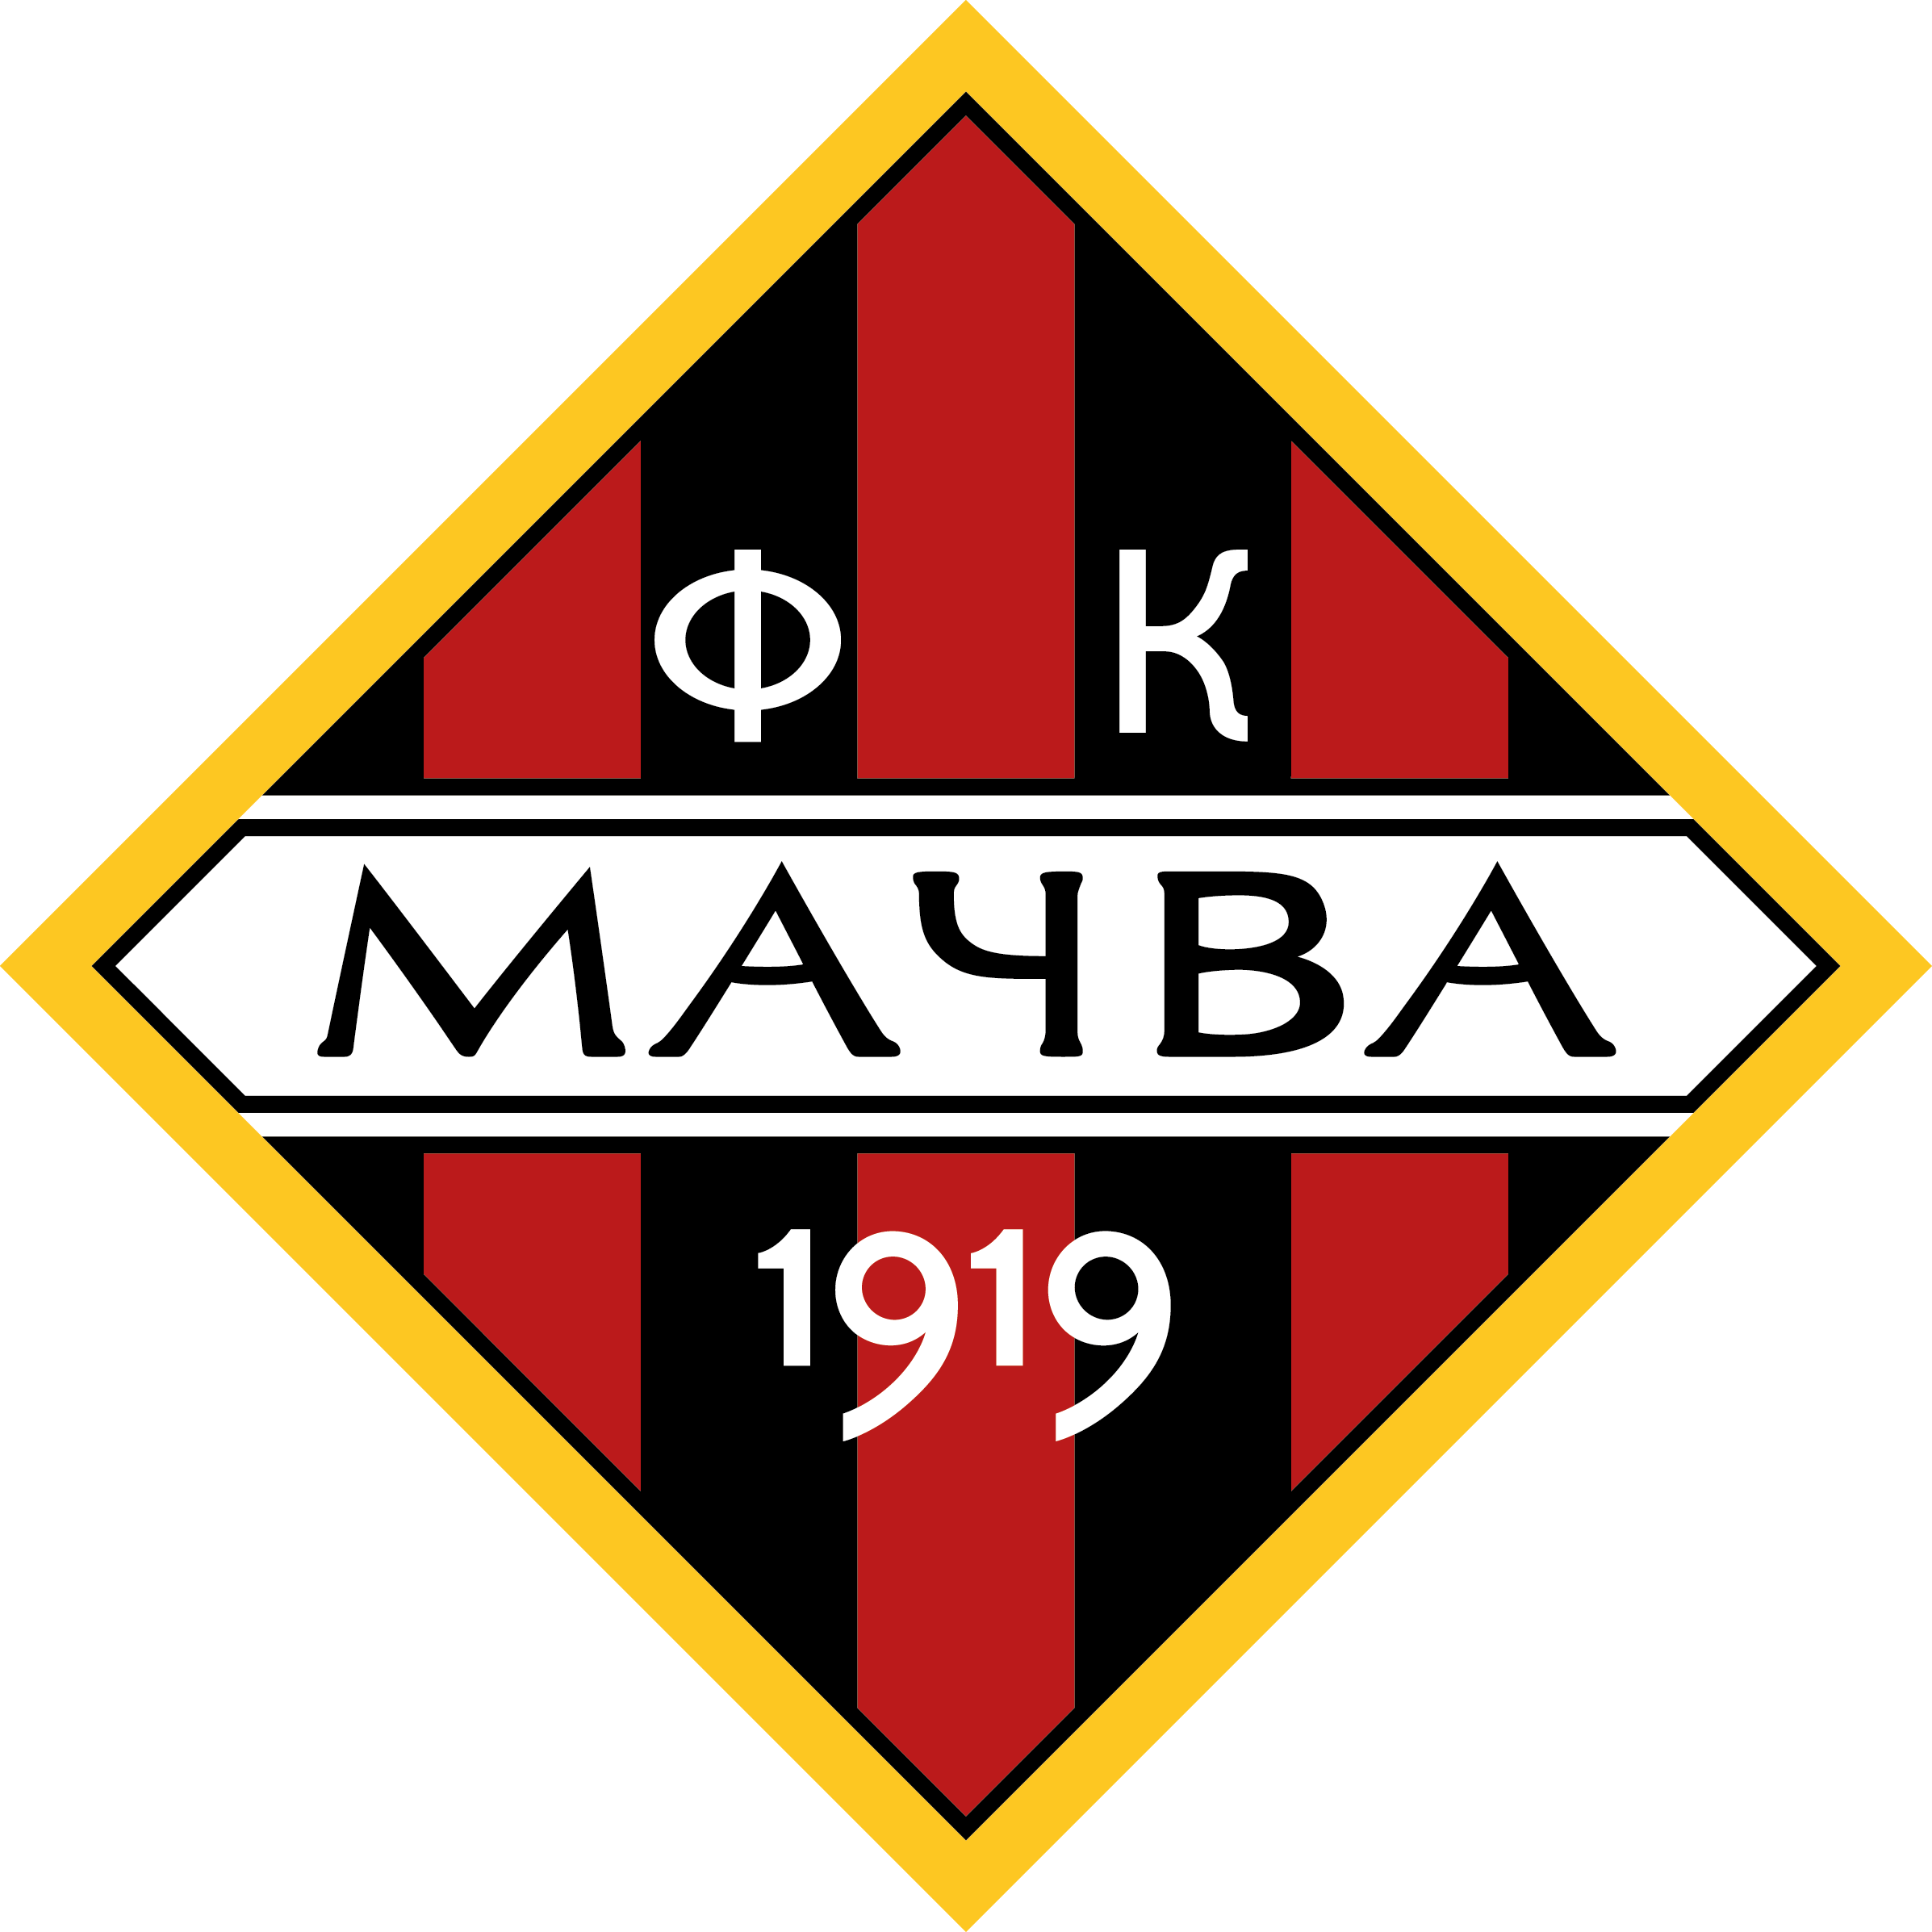 馬瑟瓦沙巴 logo